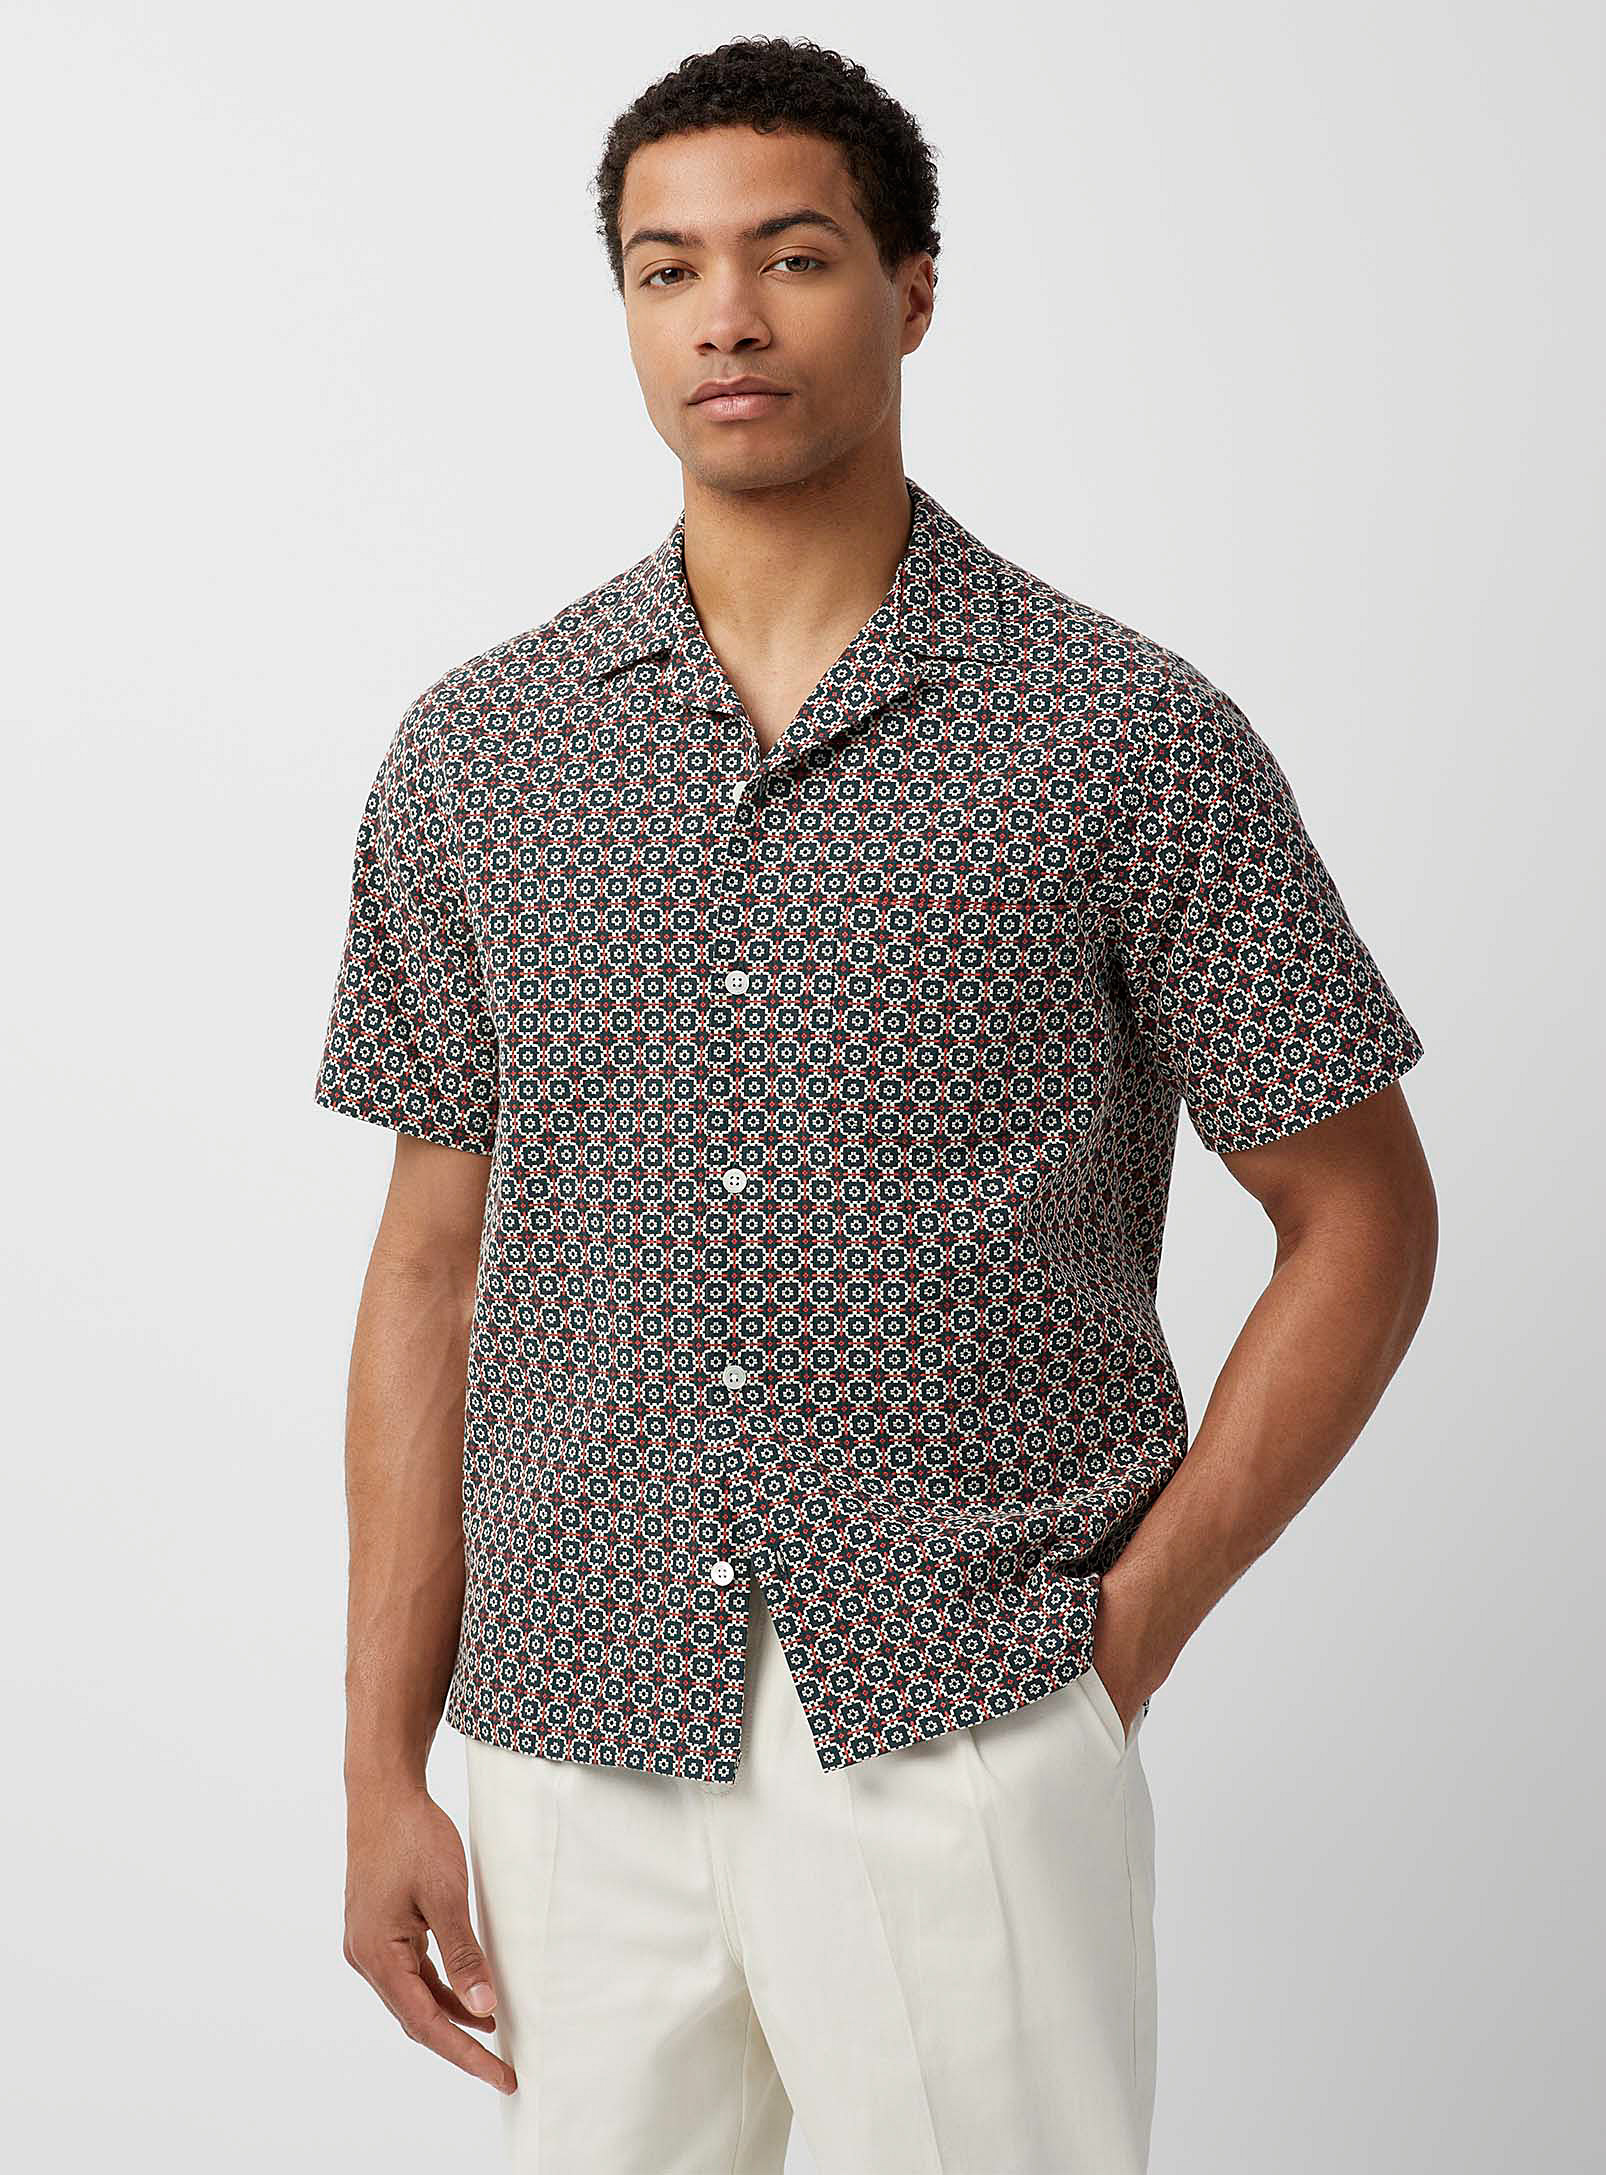 Portuguese Flannel - Men's tile camp shirt